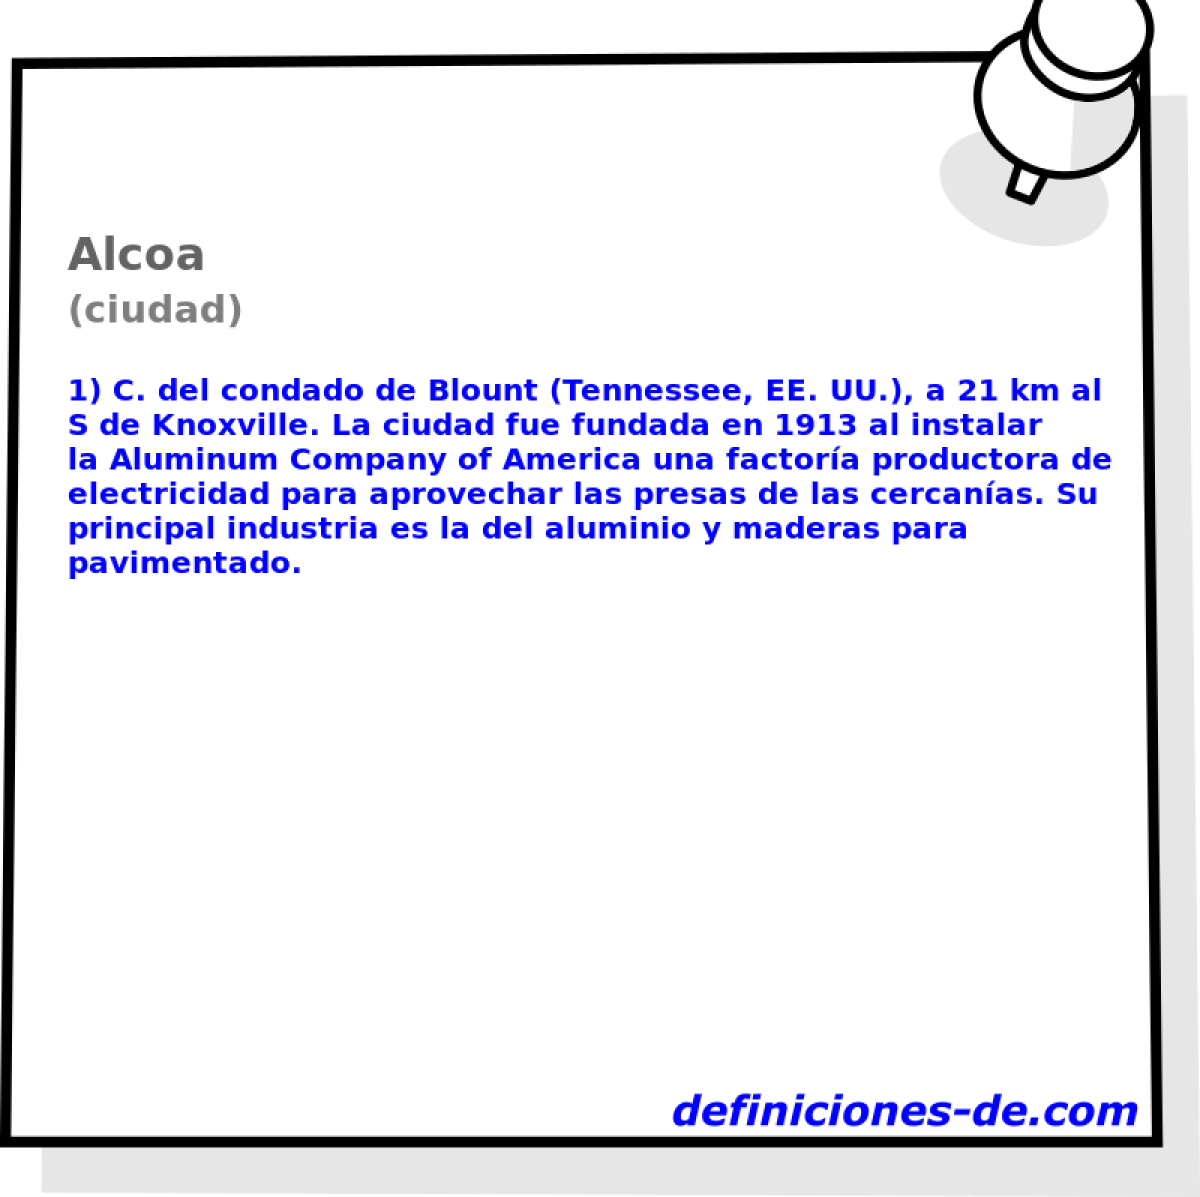 Alcoa (ciudad)